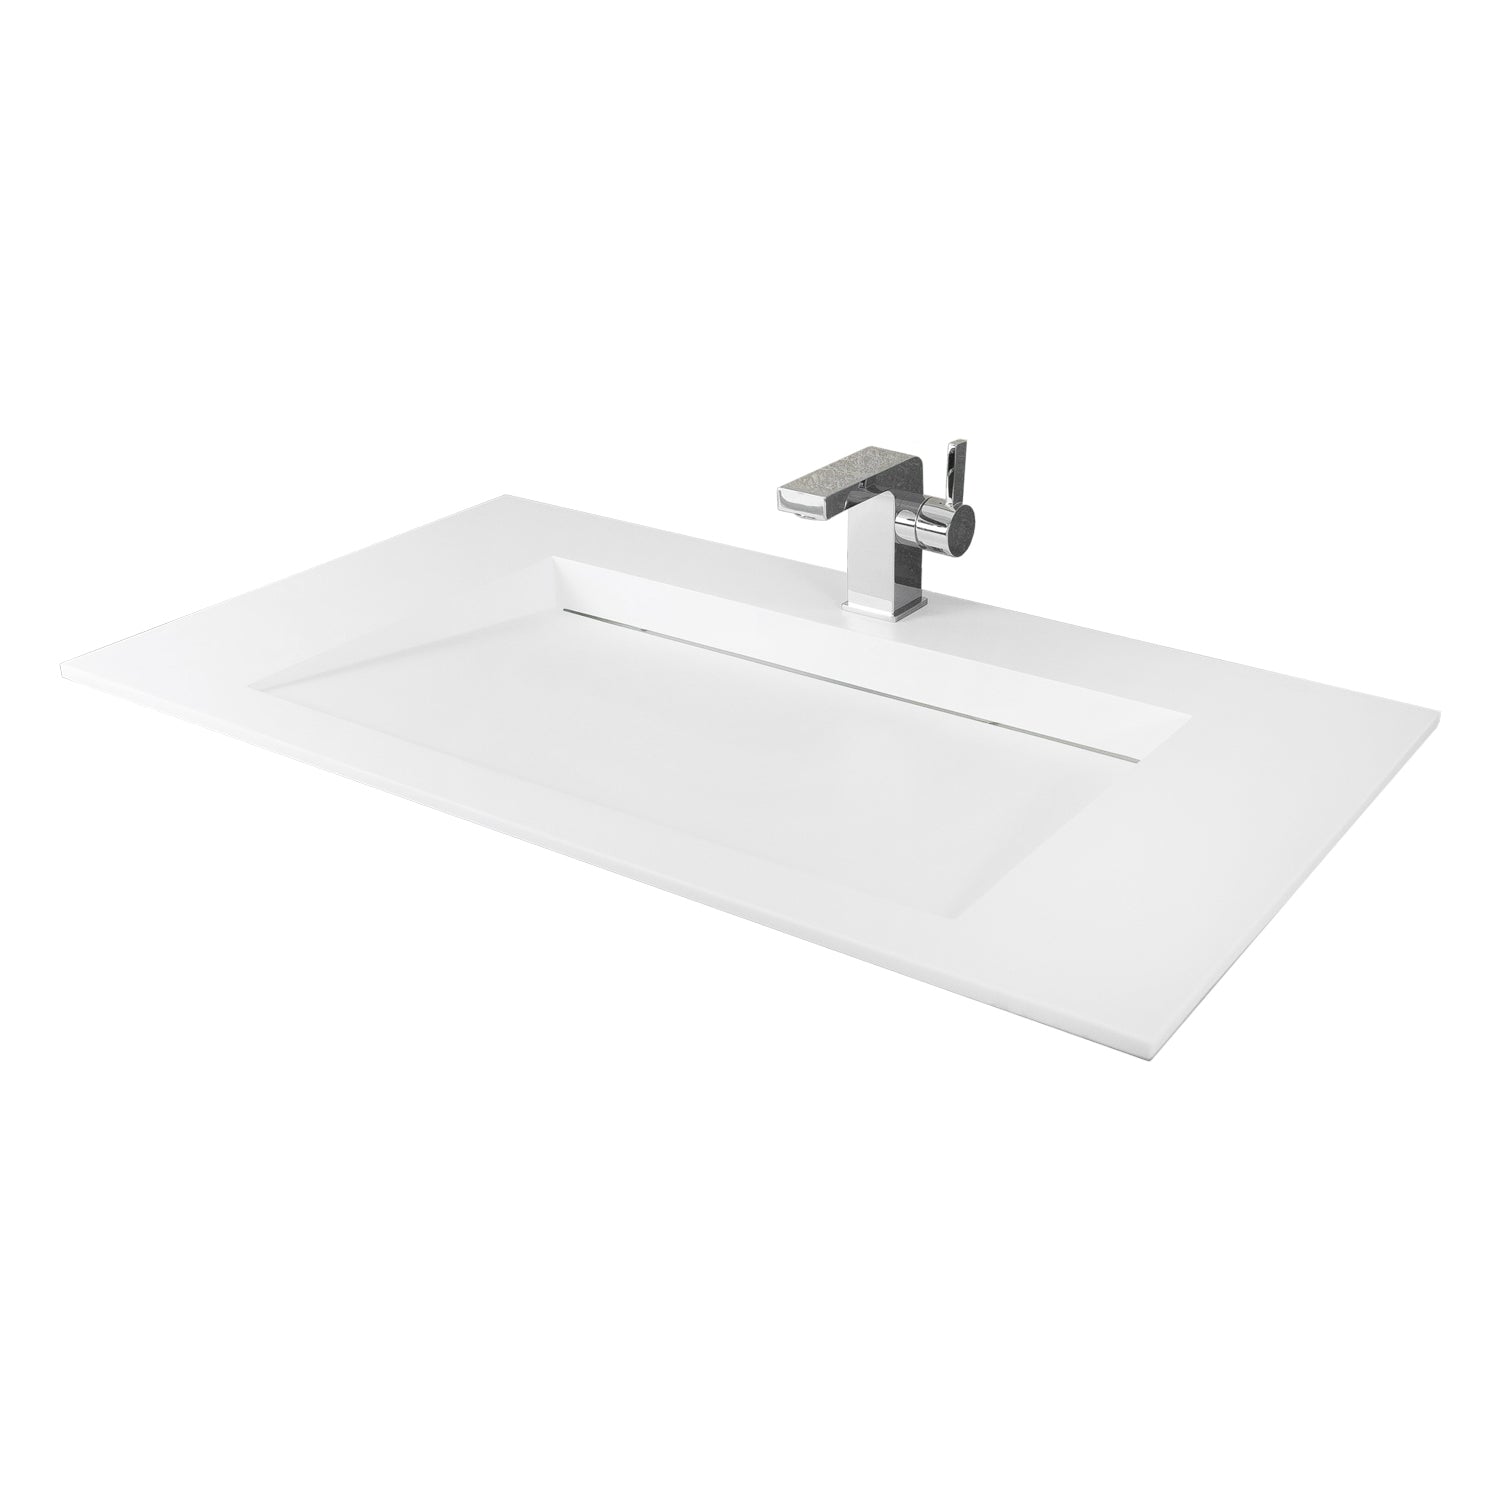 DAX Lavabo de baño rectangular de superficie sólida con montaje superior de un tazón, acabado blanco mate, 35-1/4 x 19-5/8 x 3-1/2 pulgadas (DAX-AB-1331)